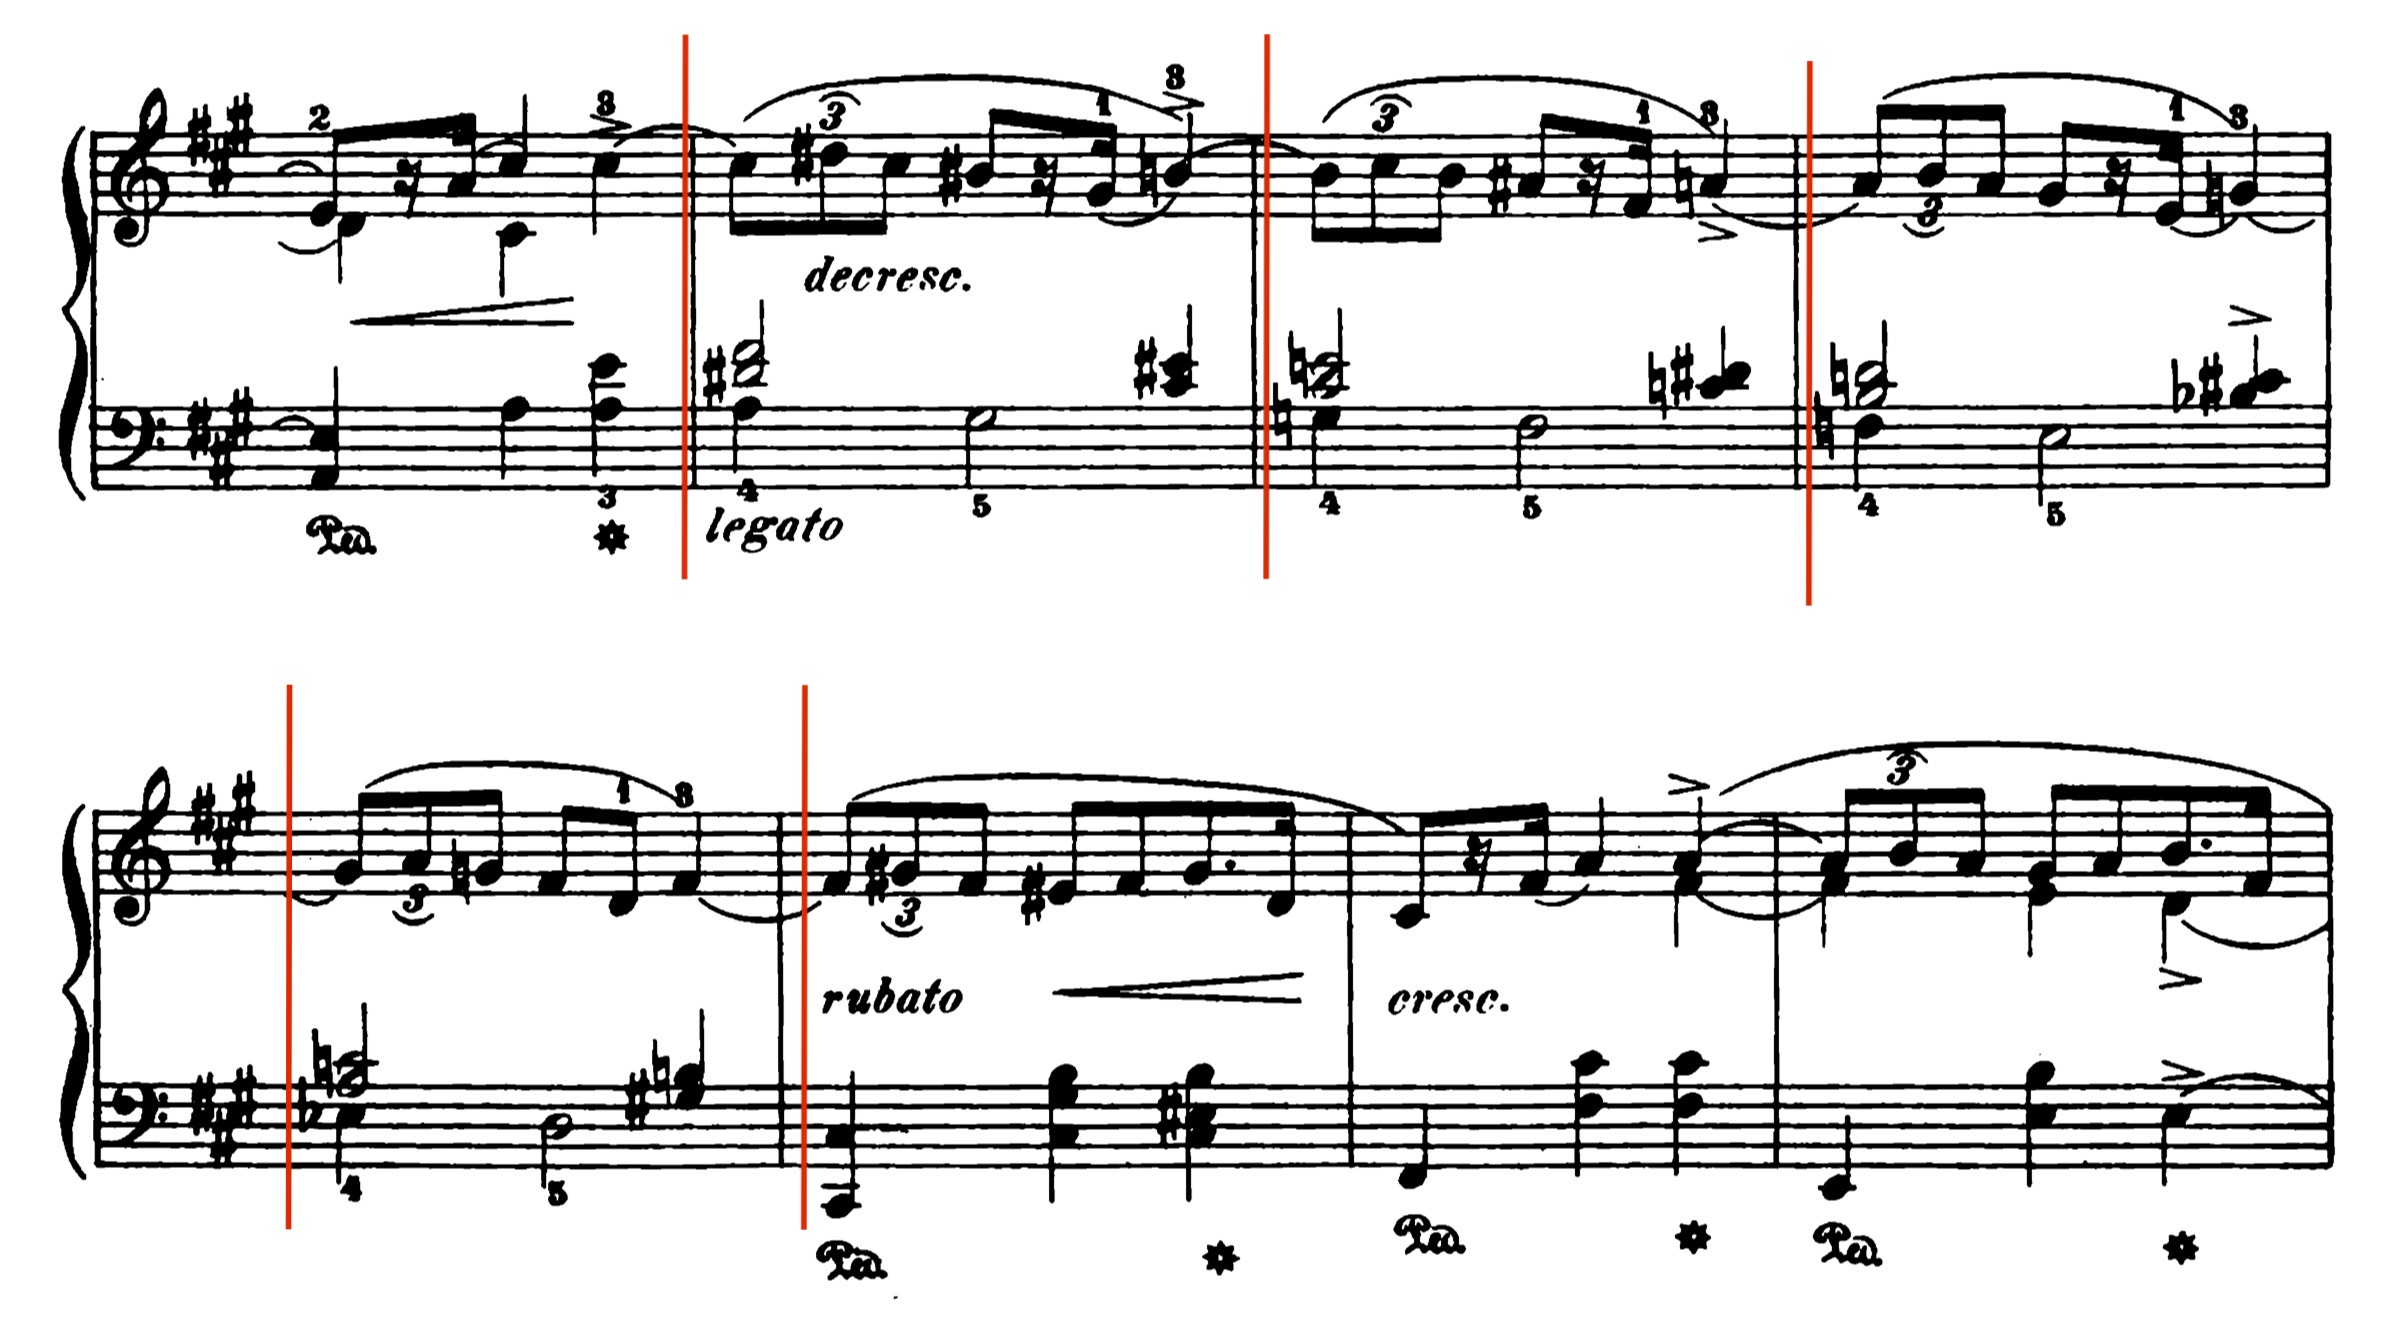 chopin sequence mazurka op. 6_2.jpg